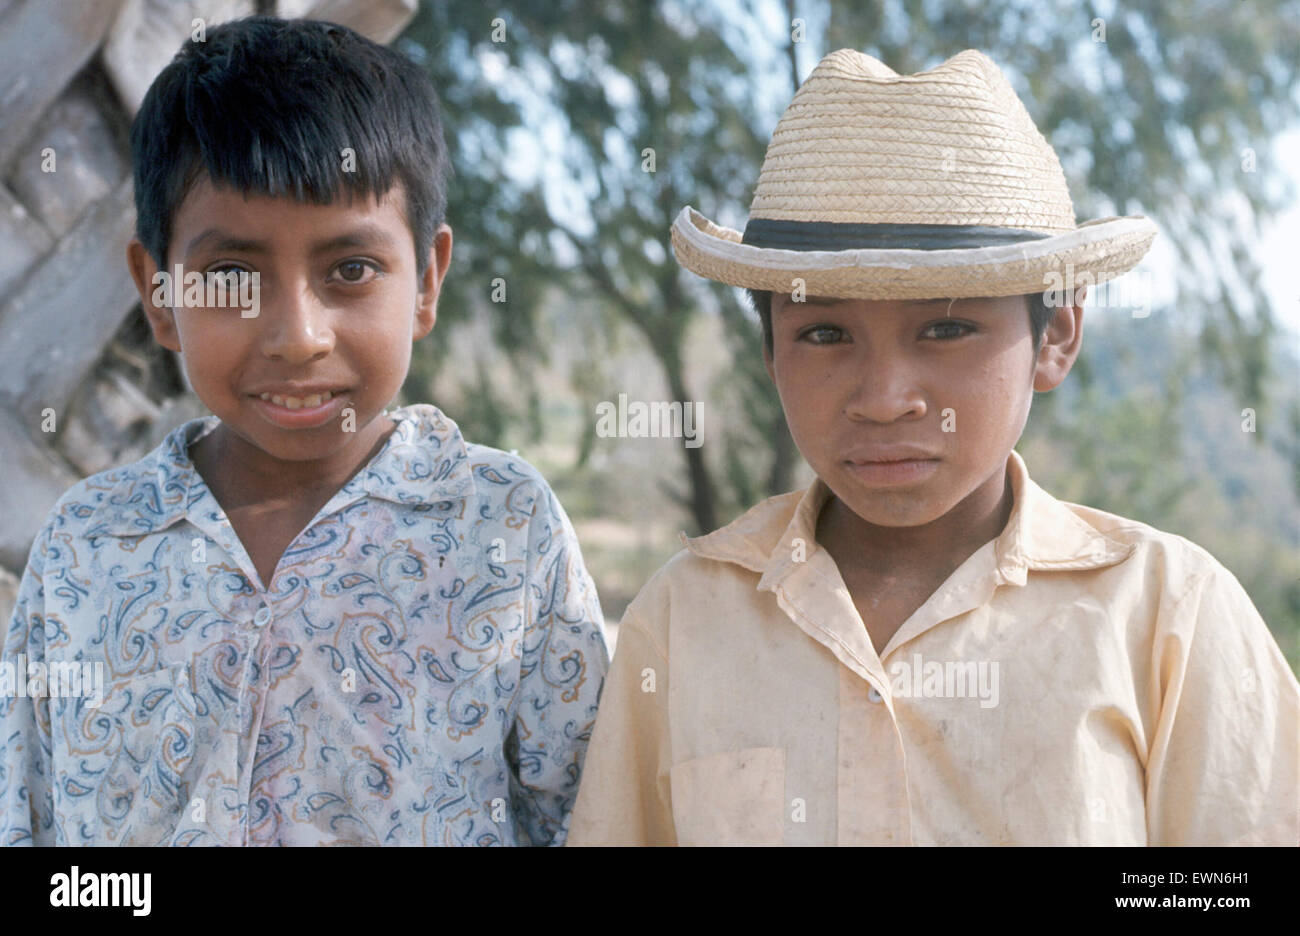 GUATEMALA CENTROAMÉRICA dos chicos jóvenes plantean EOR LA CÁMARA Foto de stock